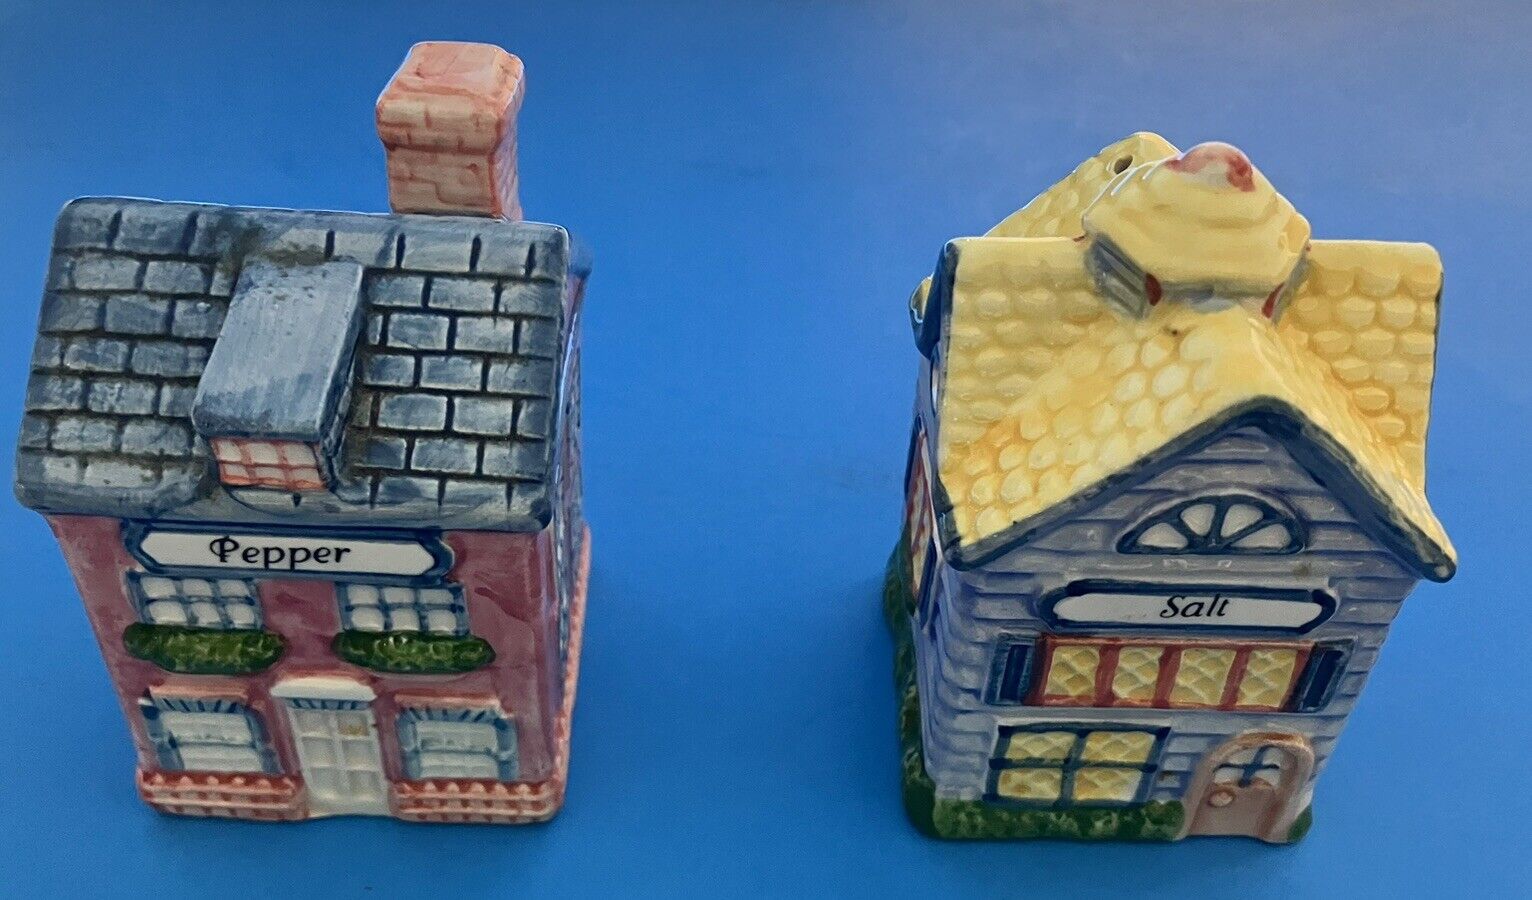 1997 Avon Cottage Salt & Pepper Shaker Set, In Original Box, Missing One Stopper